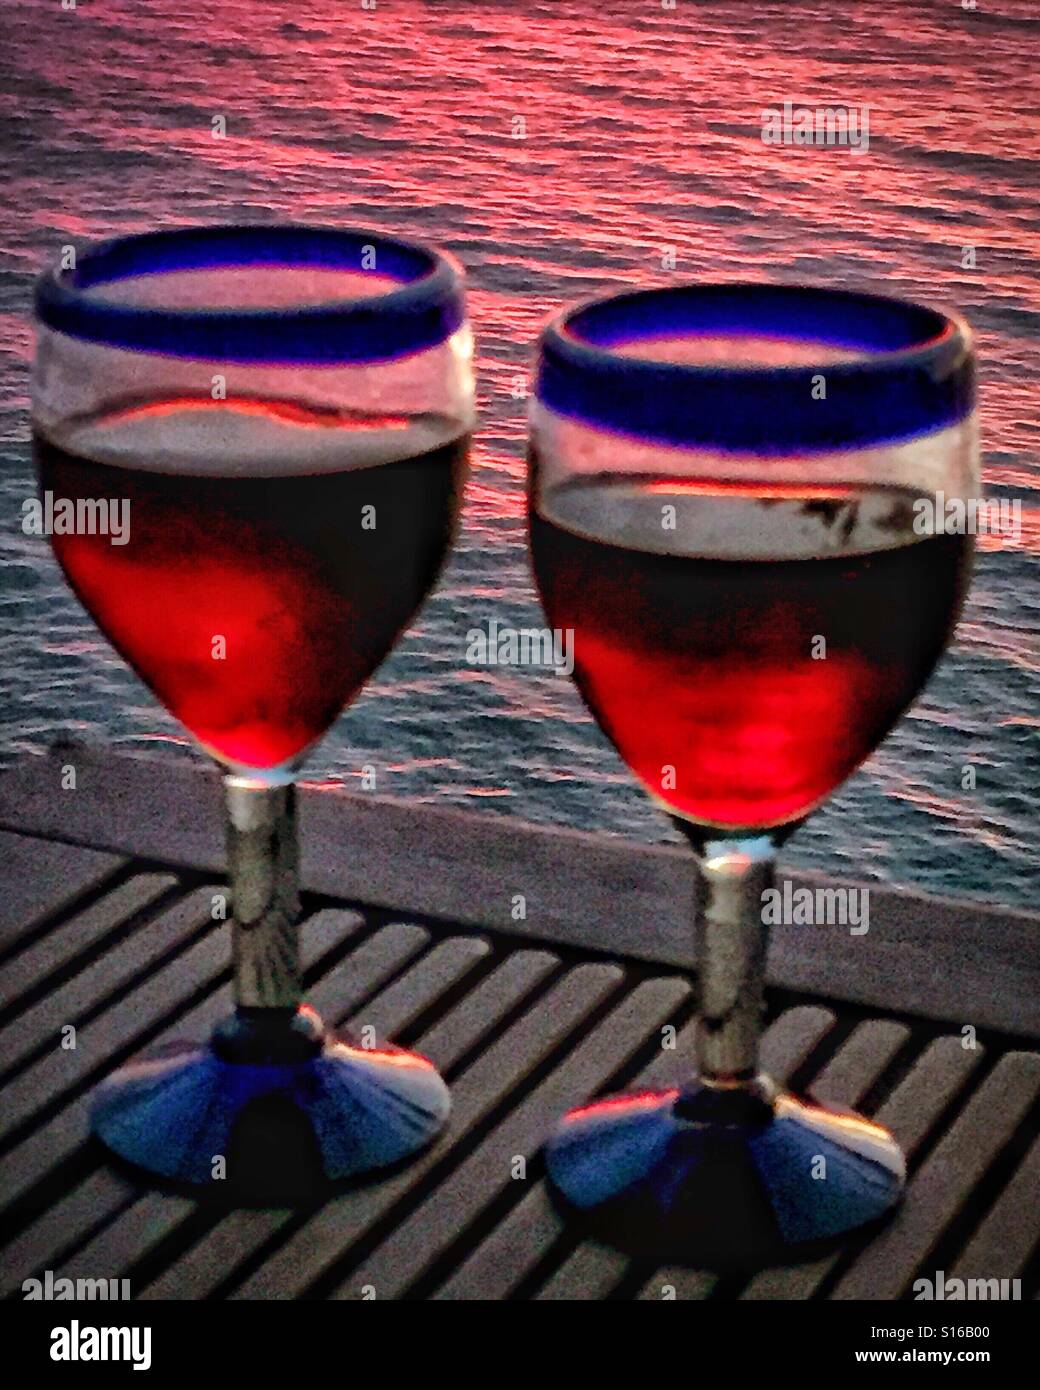 Deux mexicains authentiques cerclée de bleu main soufflée de verres sont remplis de vin rouge et sont placés sur une table en teck avec vue sur l'océan Pacifique au coucher du soleil. Banque D'Images